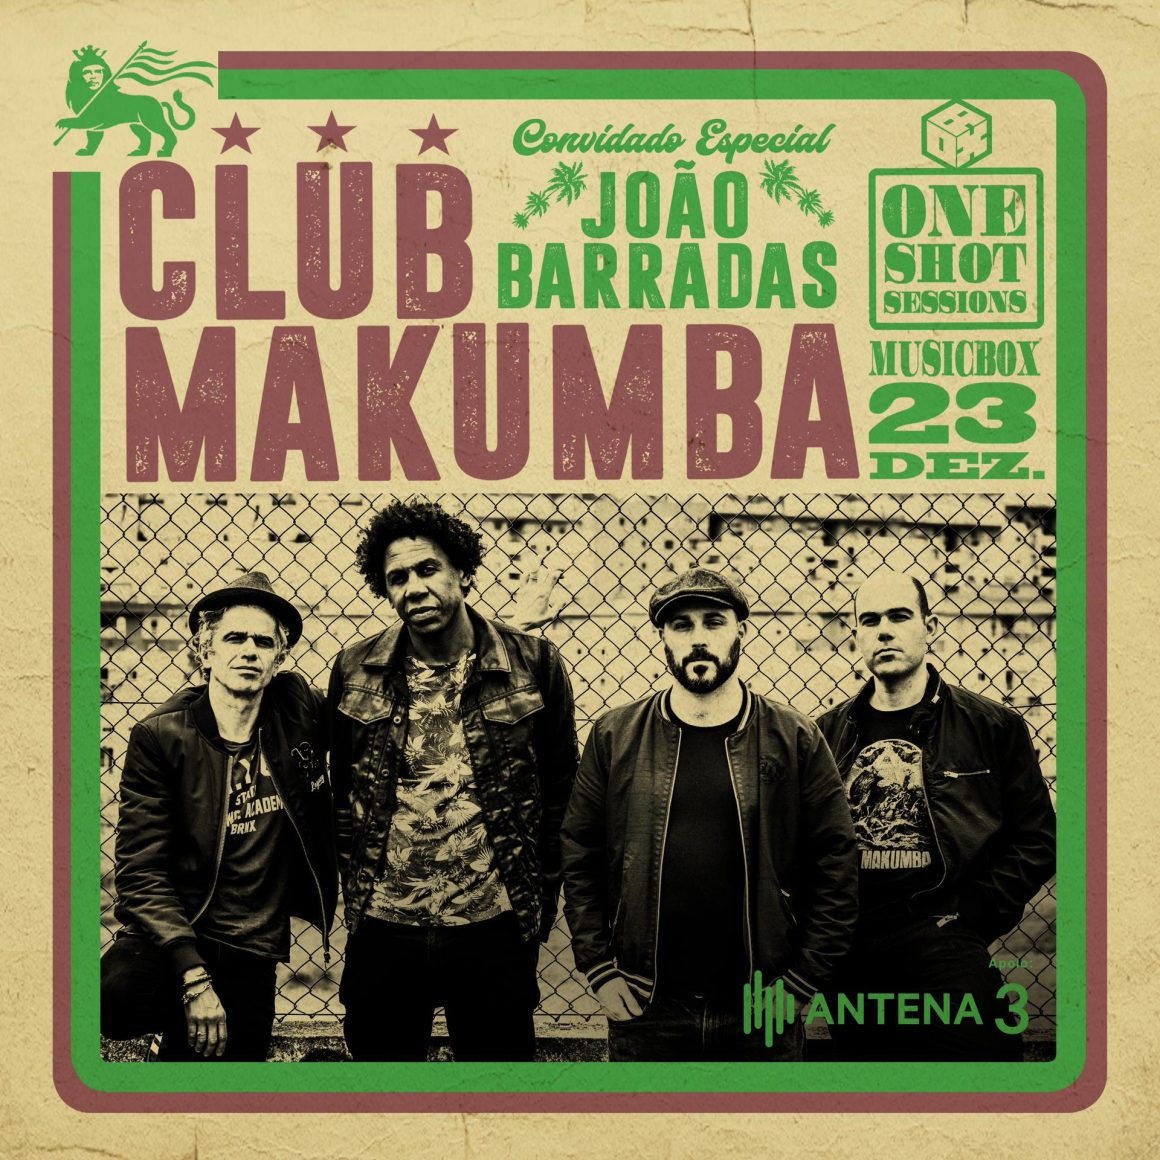 CLUB MAKUMBA APRESENTAM “ONE SHOT SESSIONS” NO MUSICBOX EM LISBOA